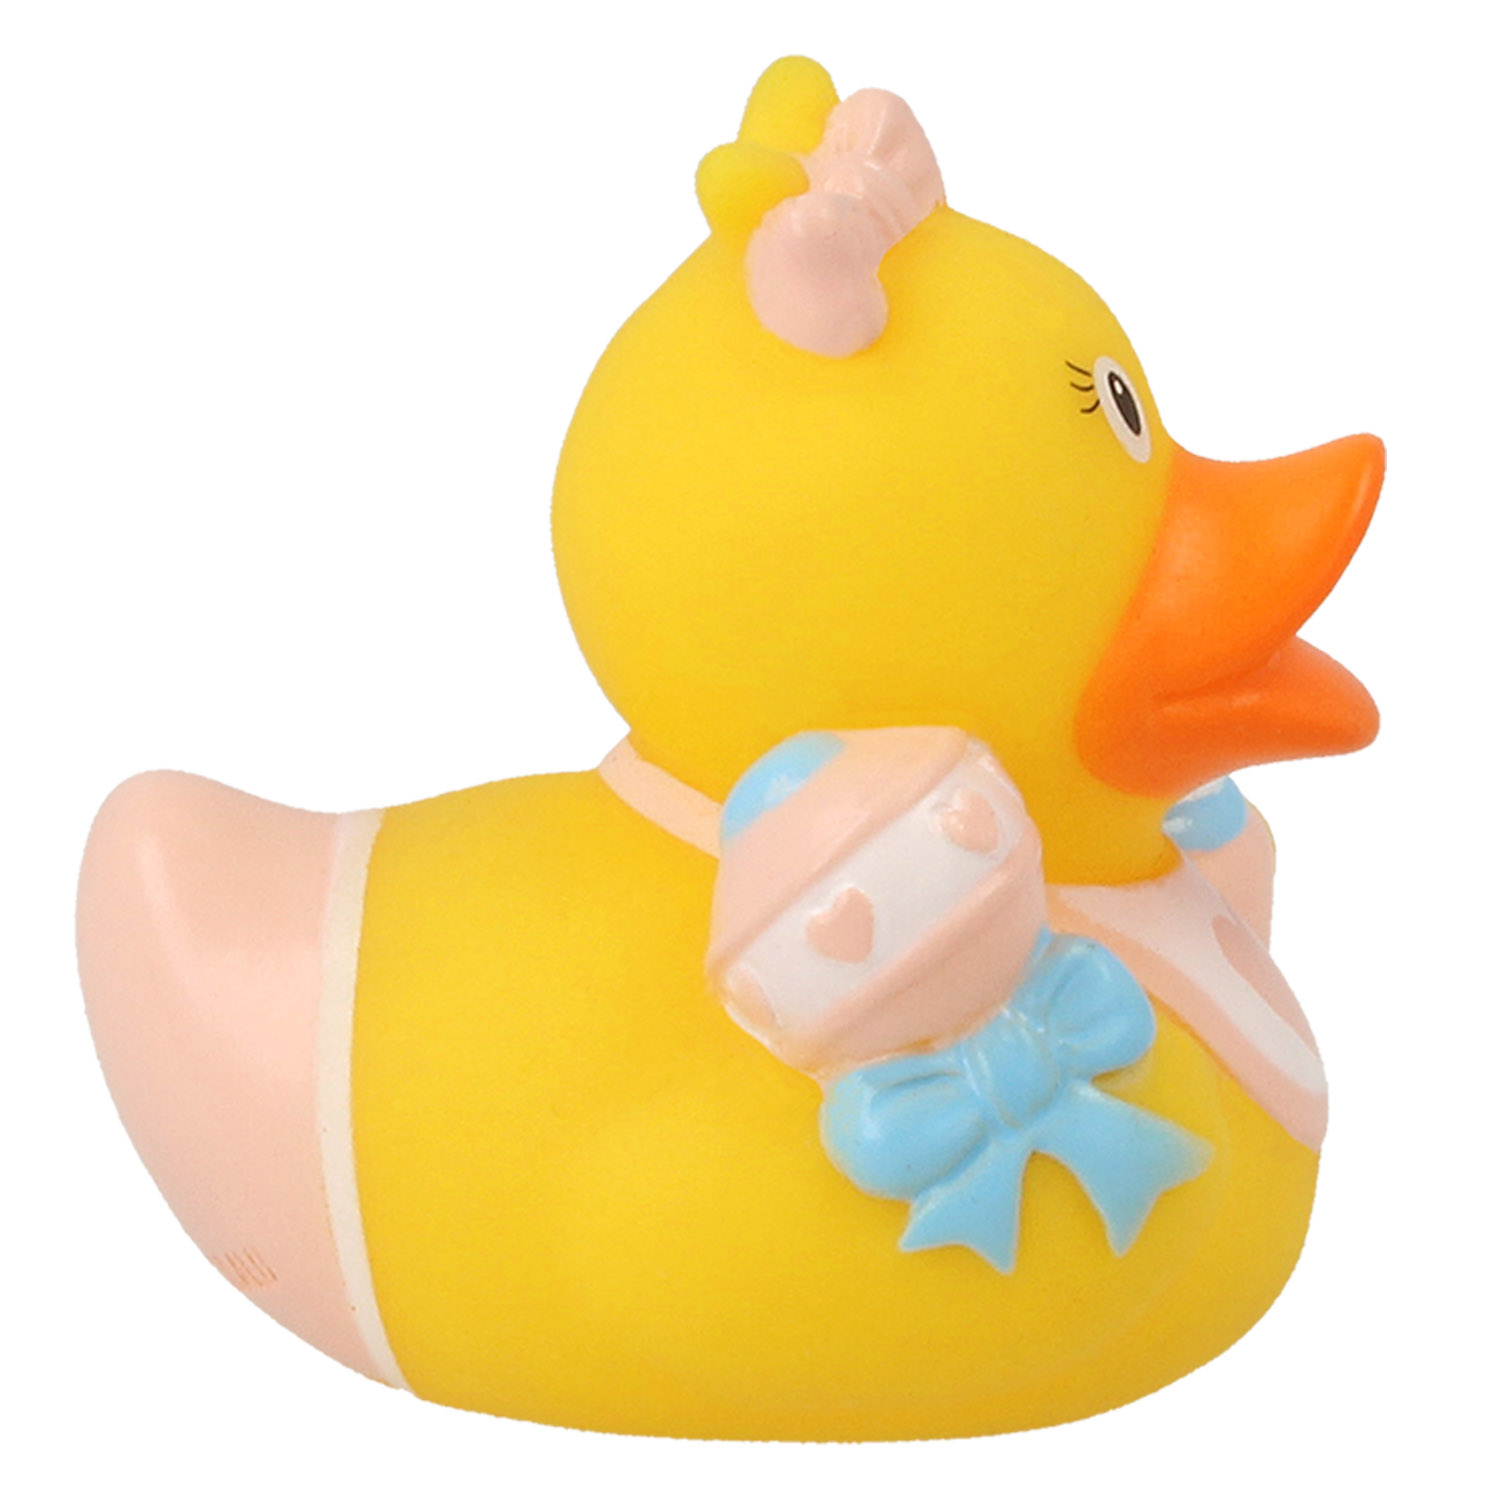 Игрушка Funny ducks для ванной Ребенок девочка уточка 1848 - фото 3